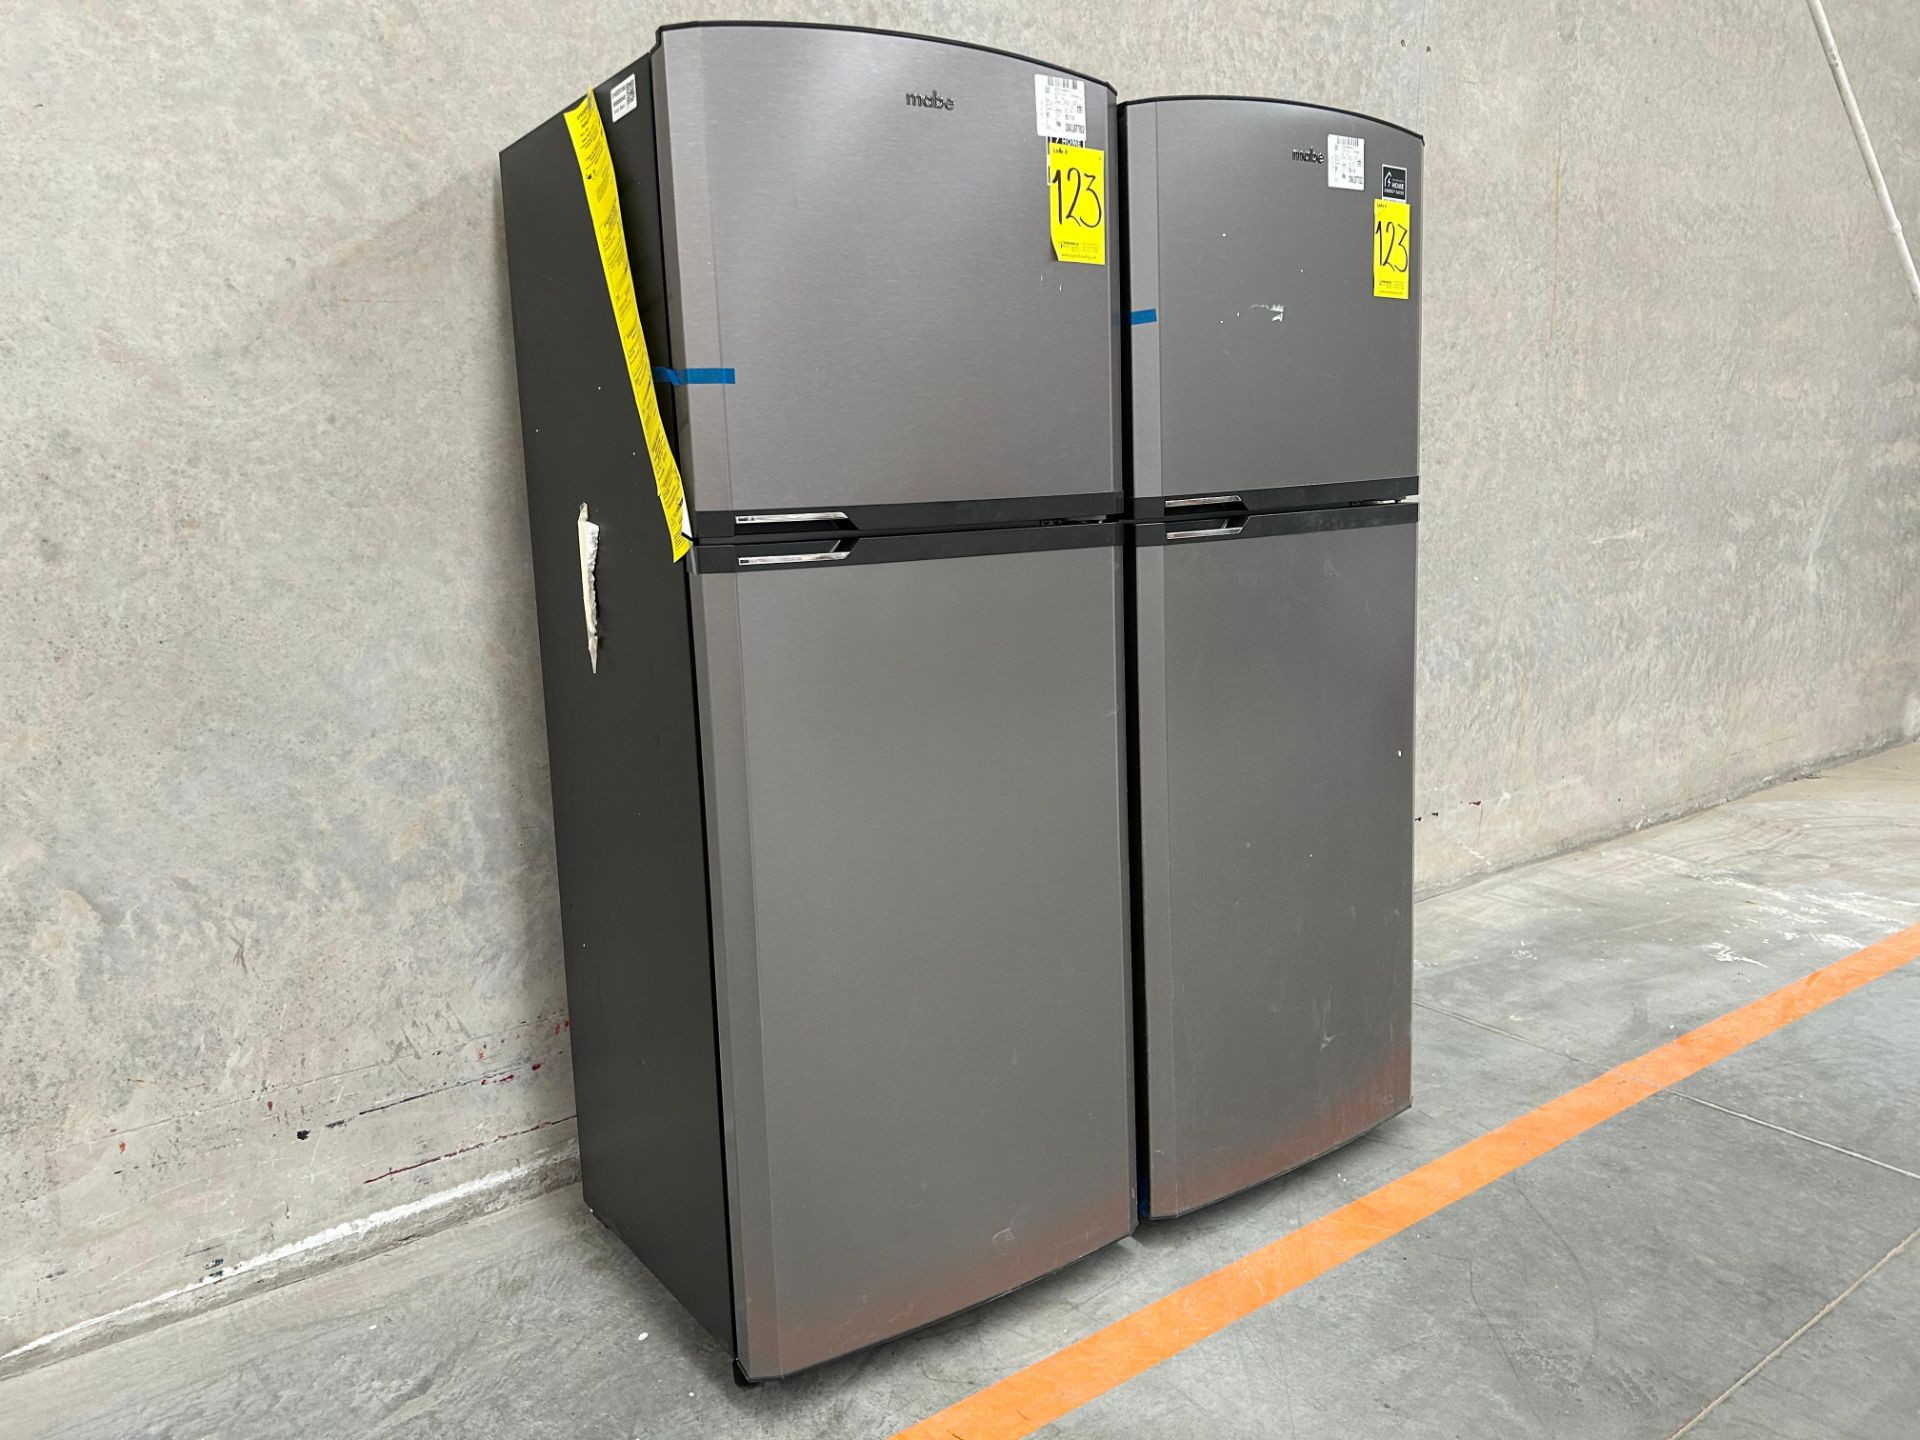 Lote de 2 Refrigeradores contiene: 1 Refrigerador Marca MABE, Modelo RME360PVMRM0, Serie 21969, Col - Image 3 of 15